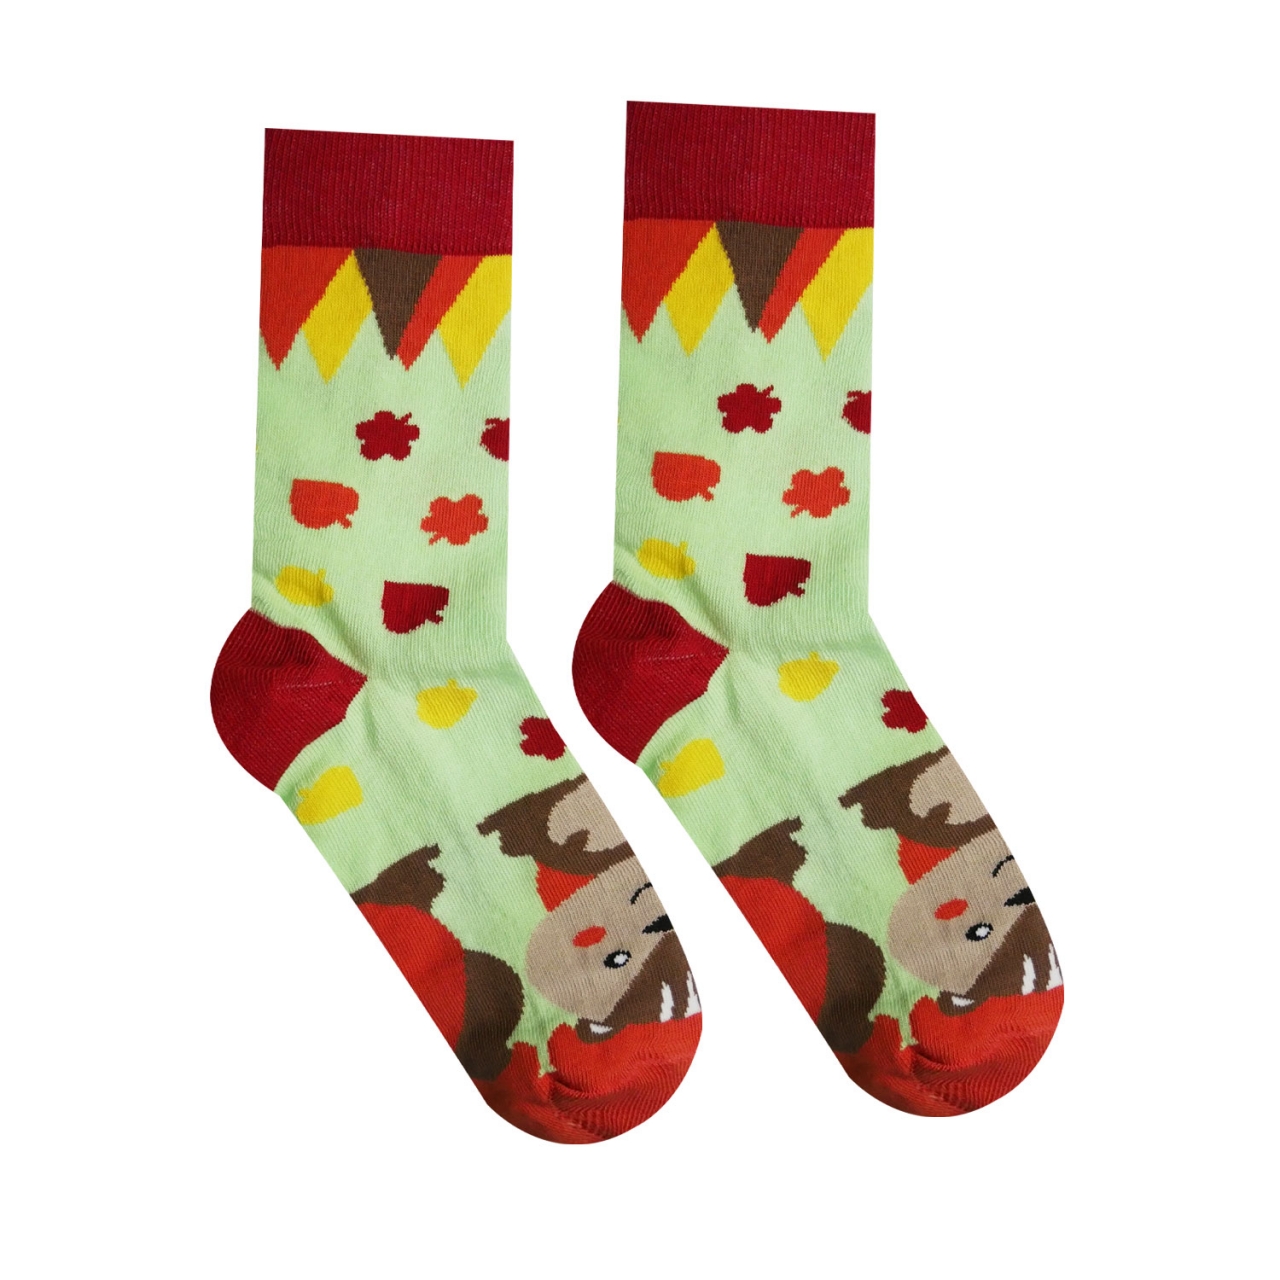 Ponožky Hesty Veverka - zelené-červené, 43-46